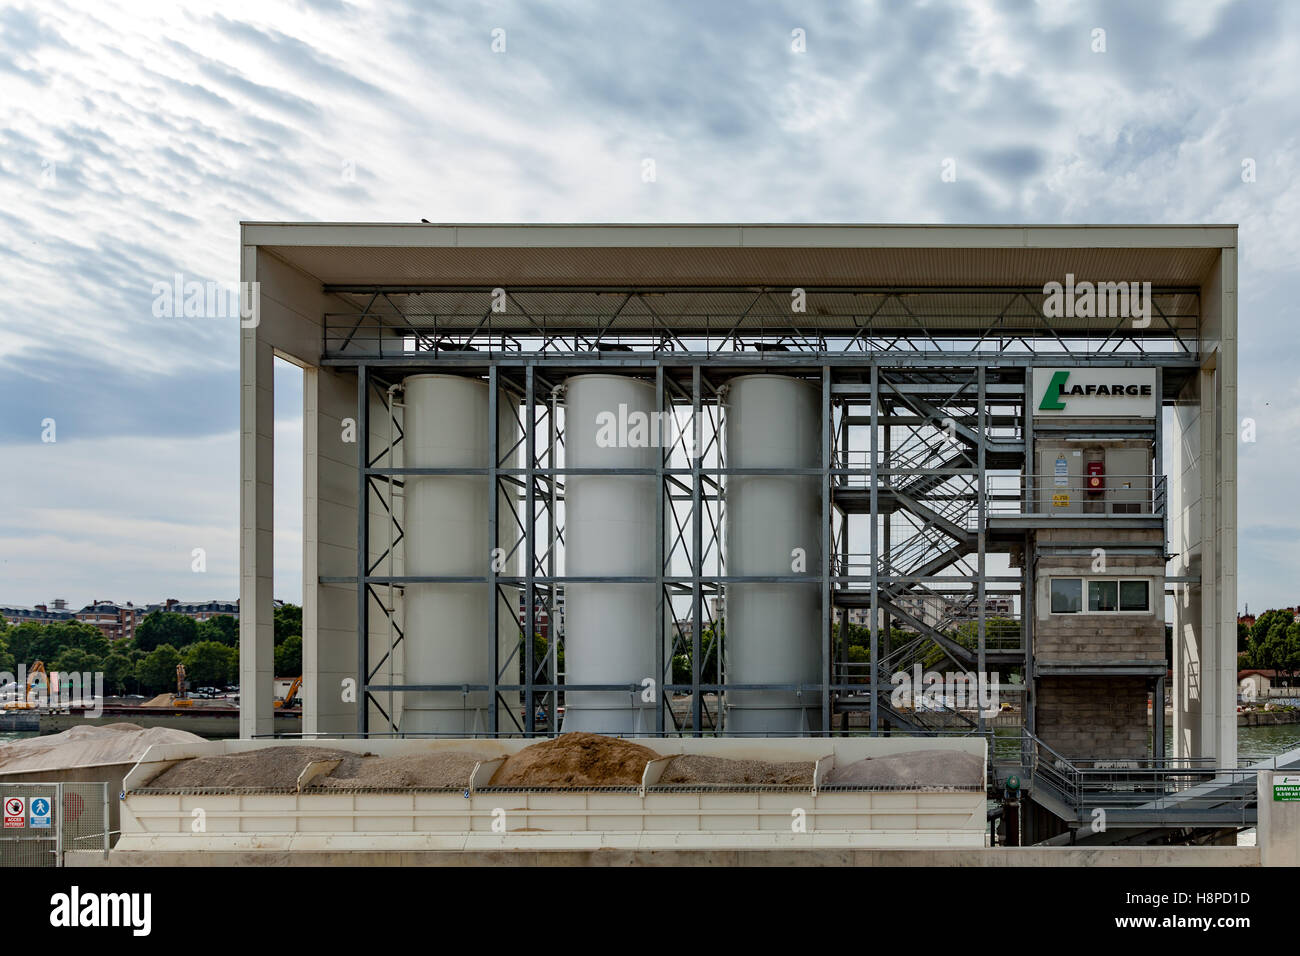 Paris, France - 20 juillet 2016 : Avis de Lafarge ciment, béton et aggegates dans infrastructure Paris France. Banque D'Images